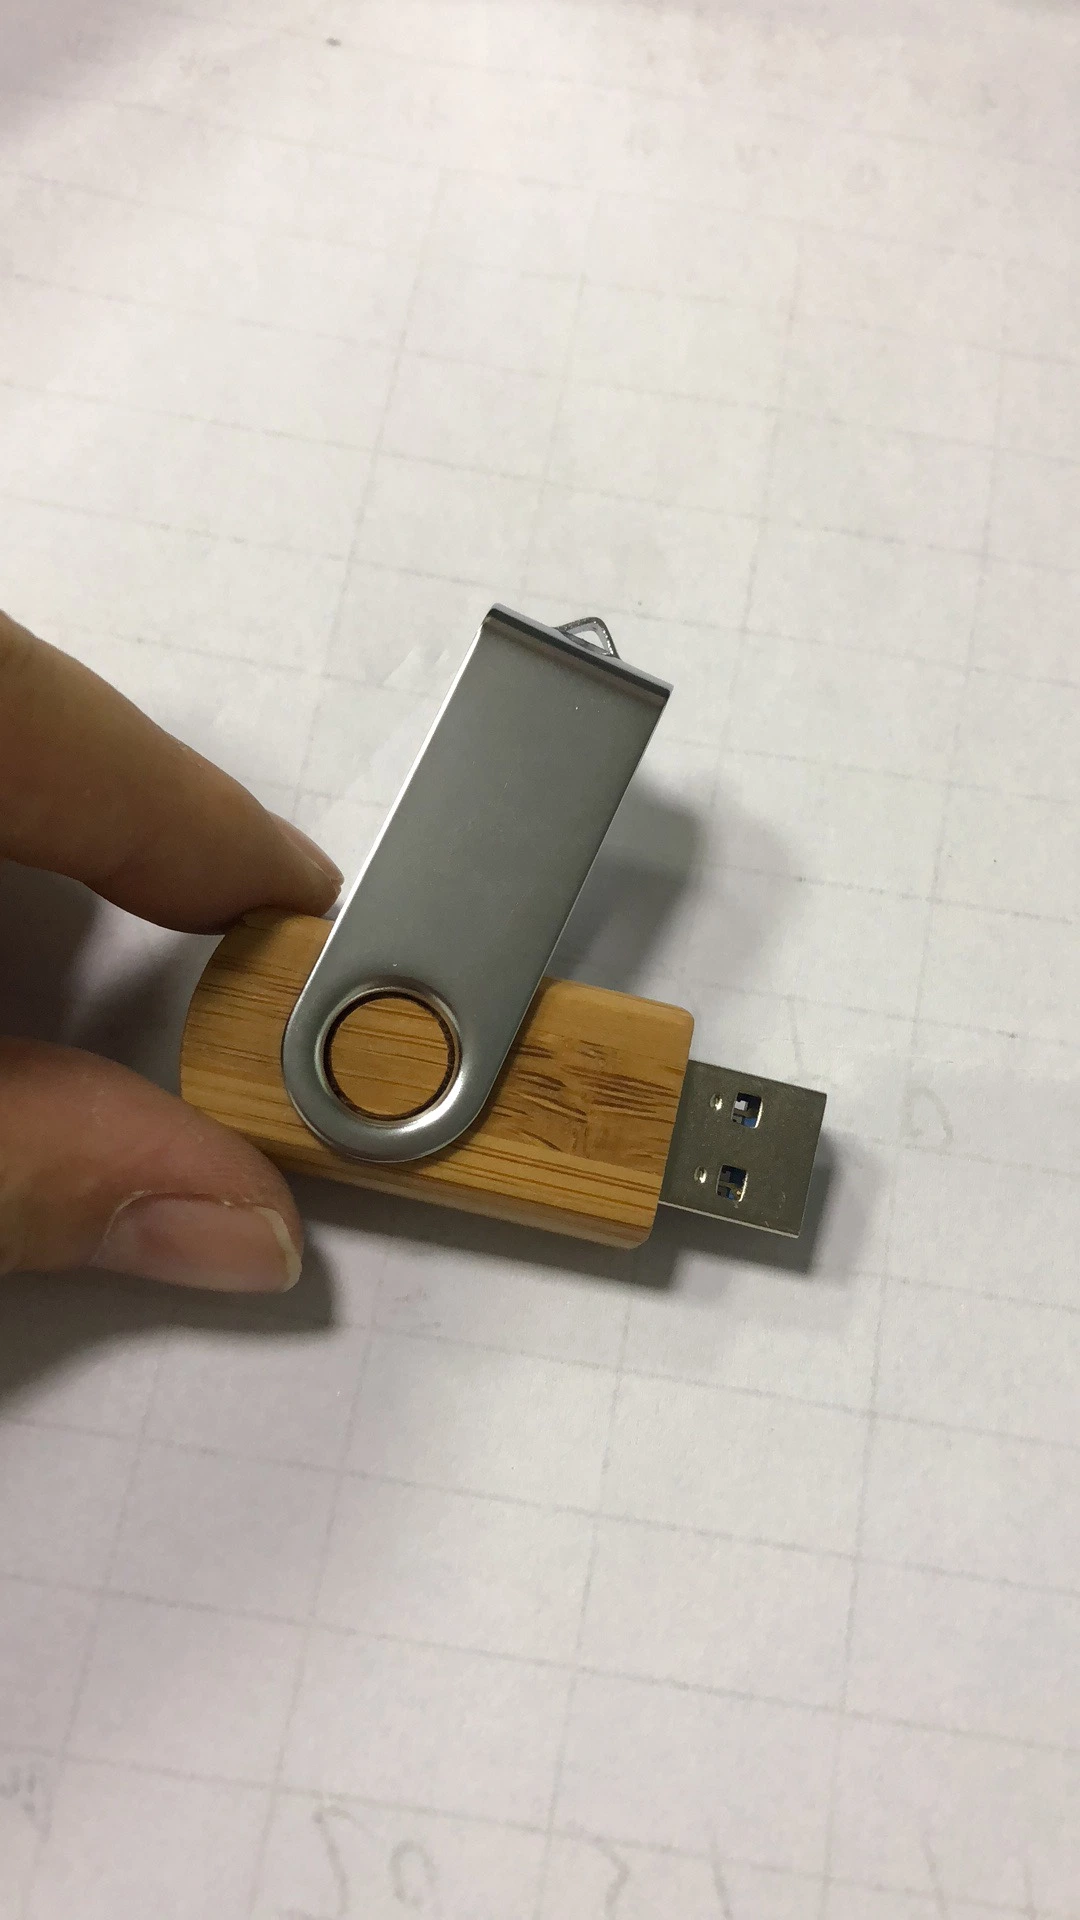 8GB 16GB 32GB Metal Swivel USB Thumb Drive